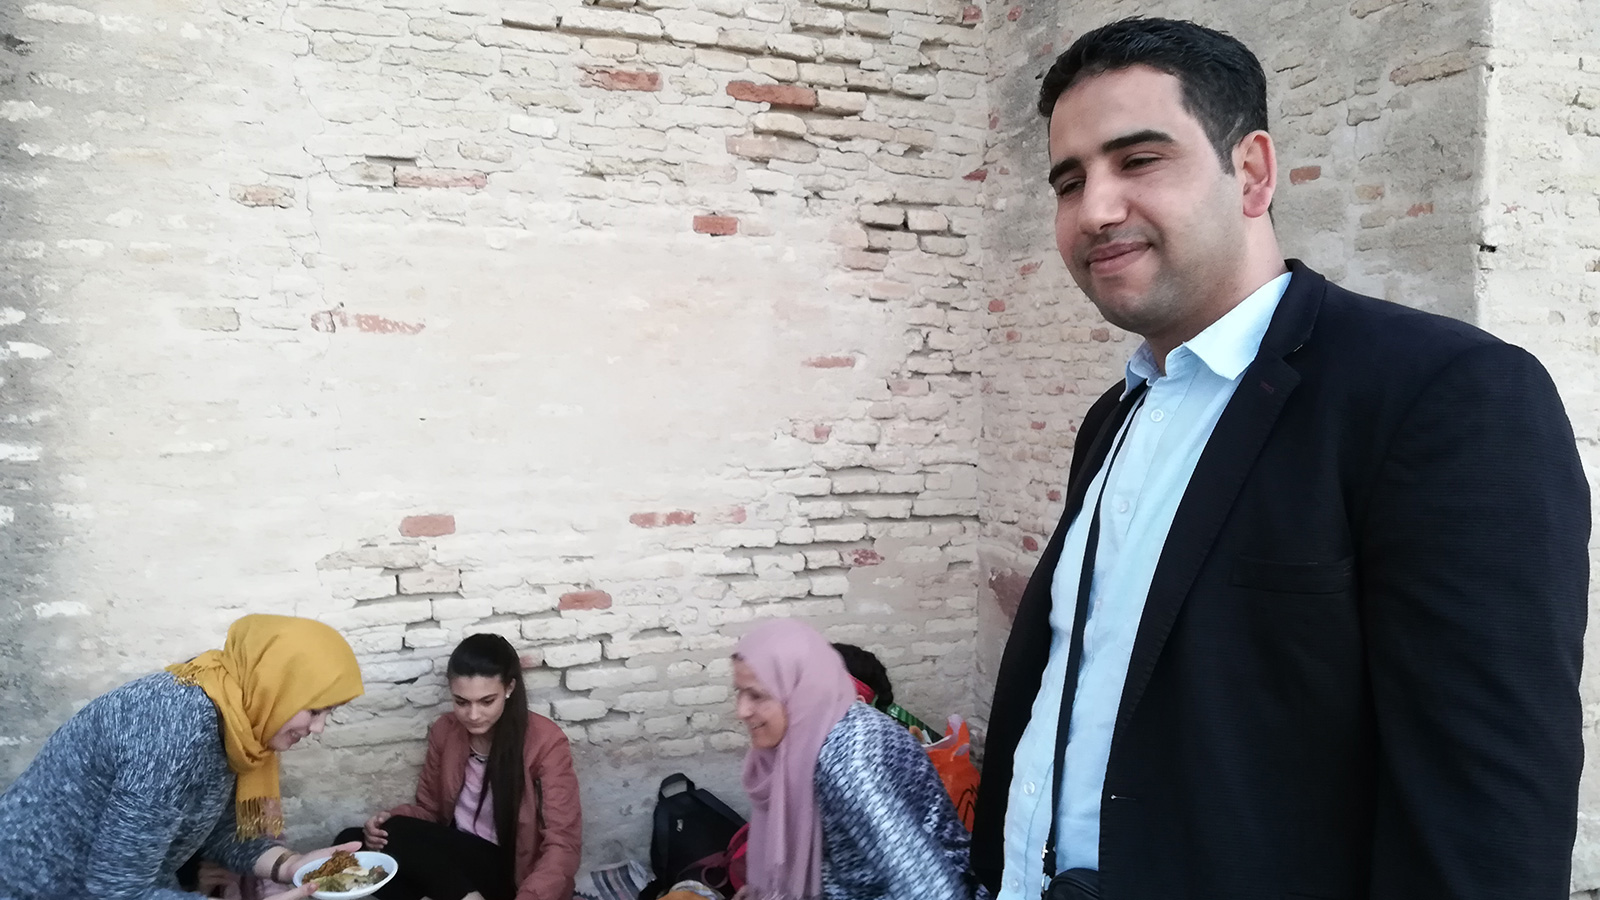 أيوب غمودي بصحبة عائلته يتناولون الإفطار في محيط جامع عقبة بالقيروان (الجزيرة)